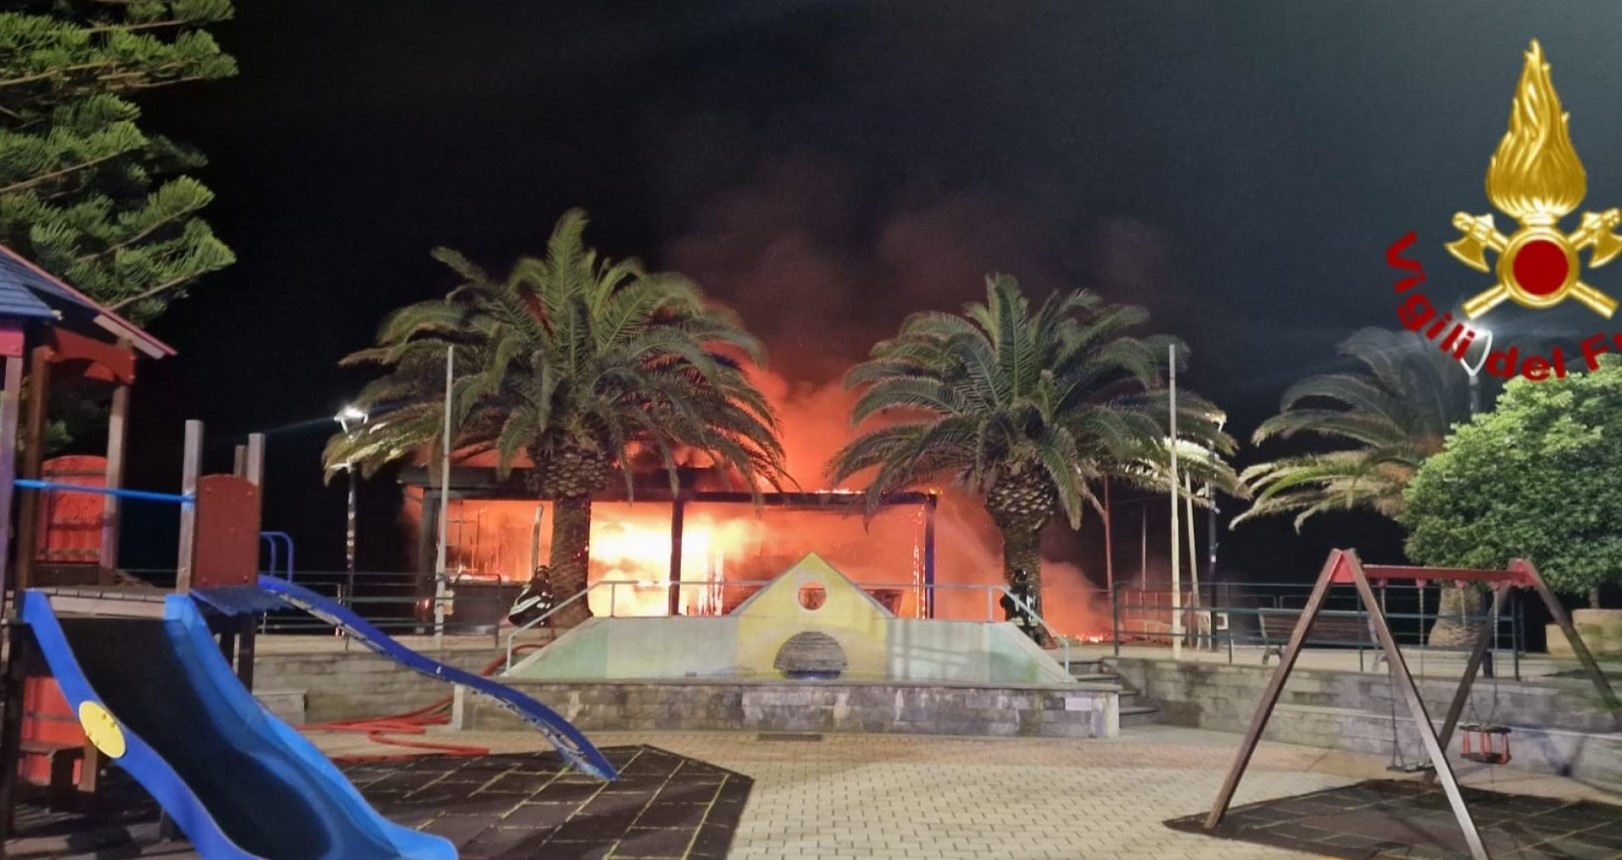 Incendio struttura del Bagnun, individuati i responsabili: sono tre minorenni, hanno agito per vendetta